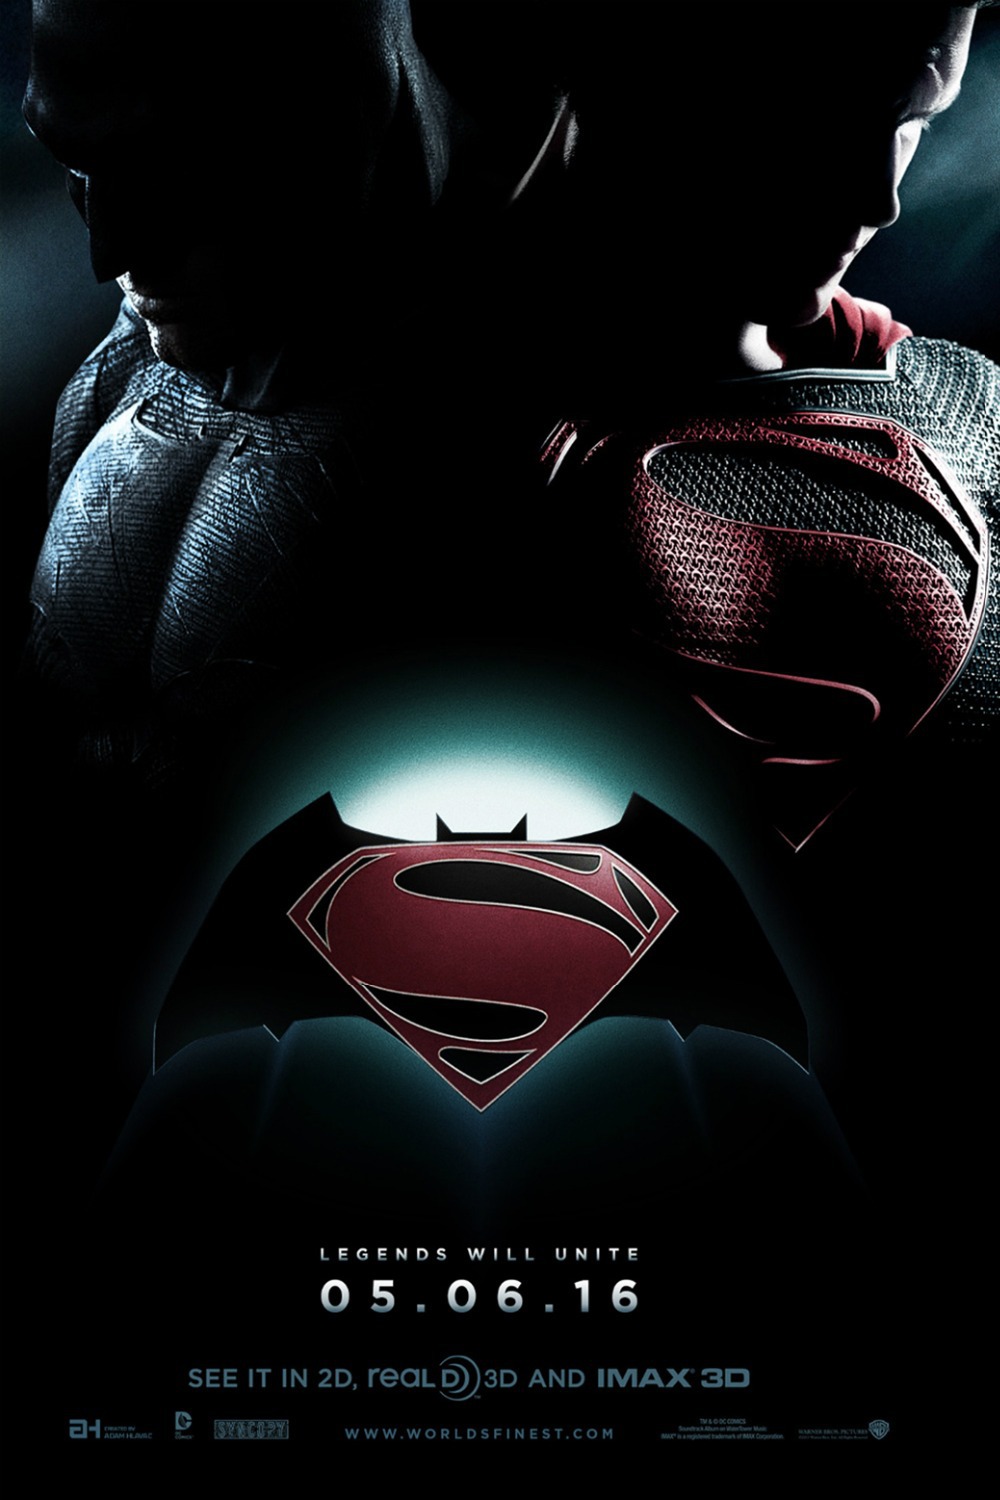 Batman Superman 2015